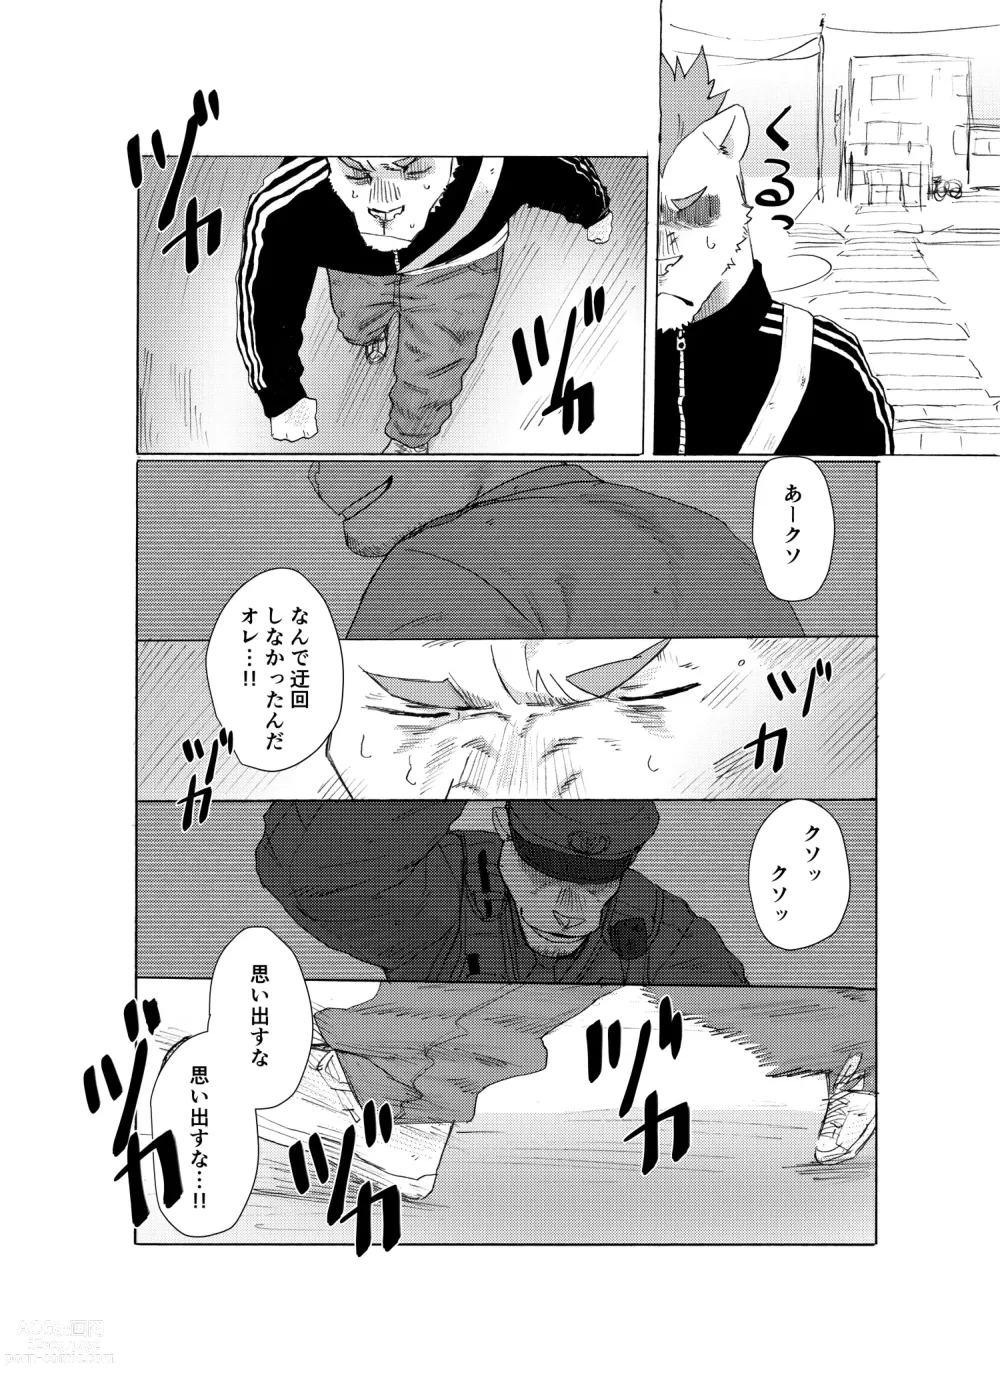 Page 5 of manga BAD Memories